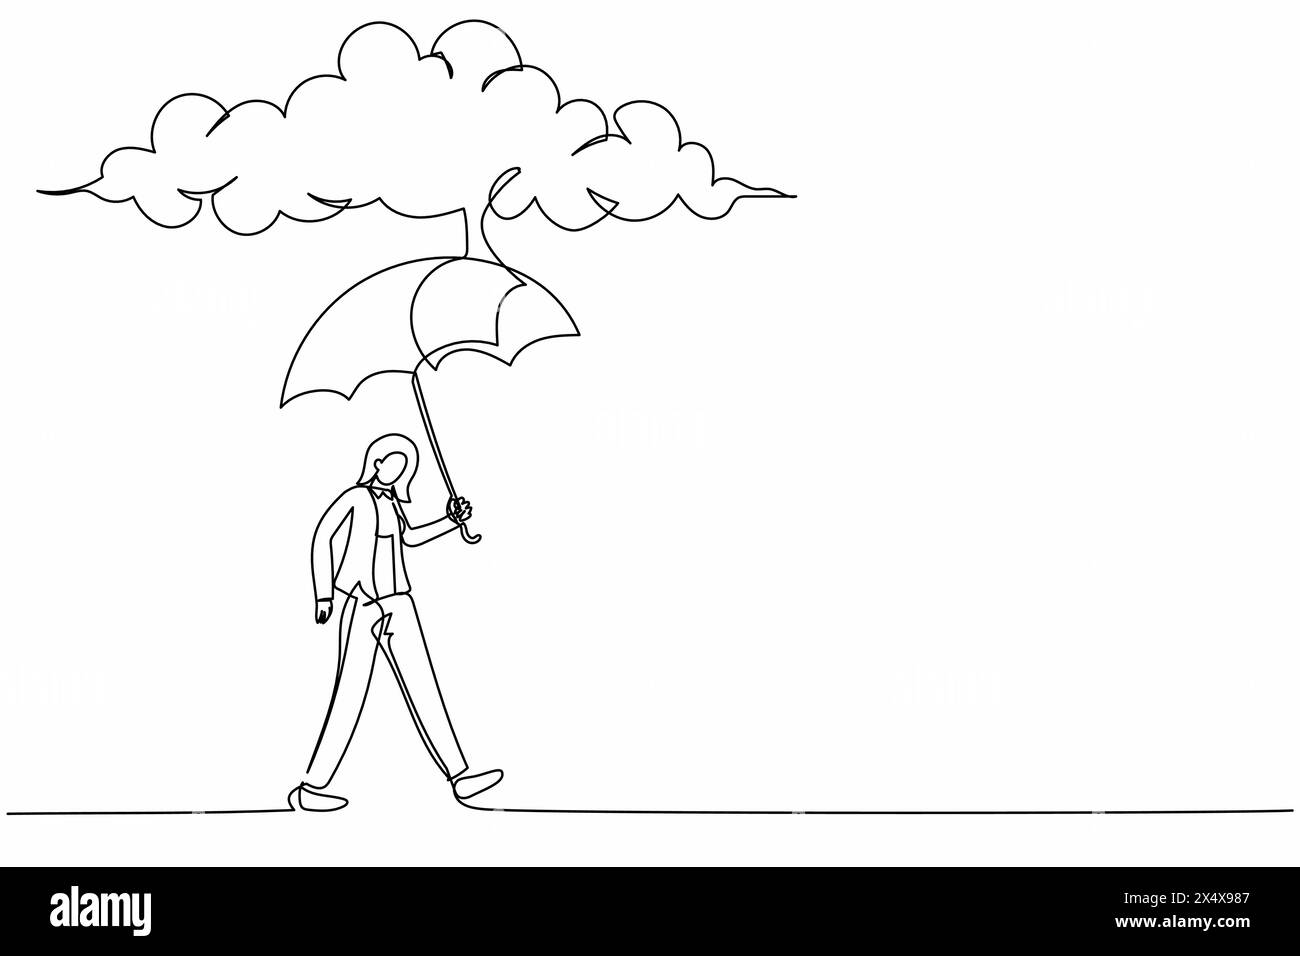 Una linea continua che attira una donna d'affari protettiva che cammina con un supporto per ombrelloni sotto le nuvole di pioggia. Depressione, passante con il tempo piovoso. Wom inzuppato Illustrazione Vettoriale